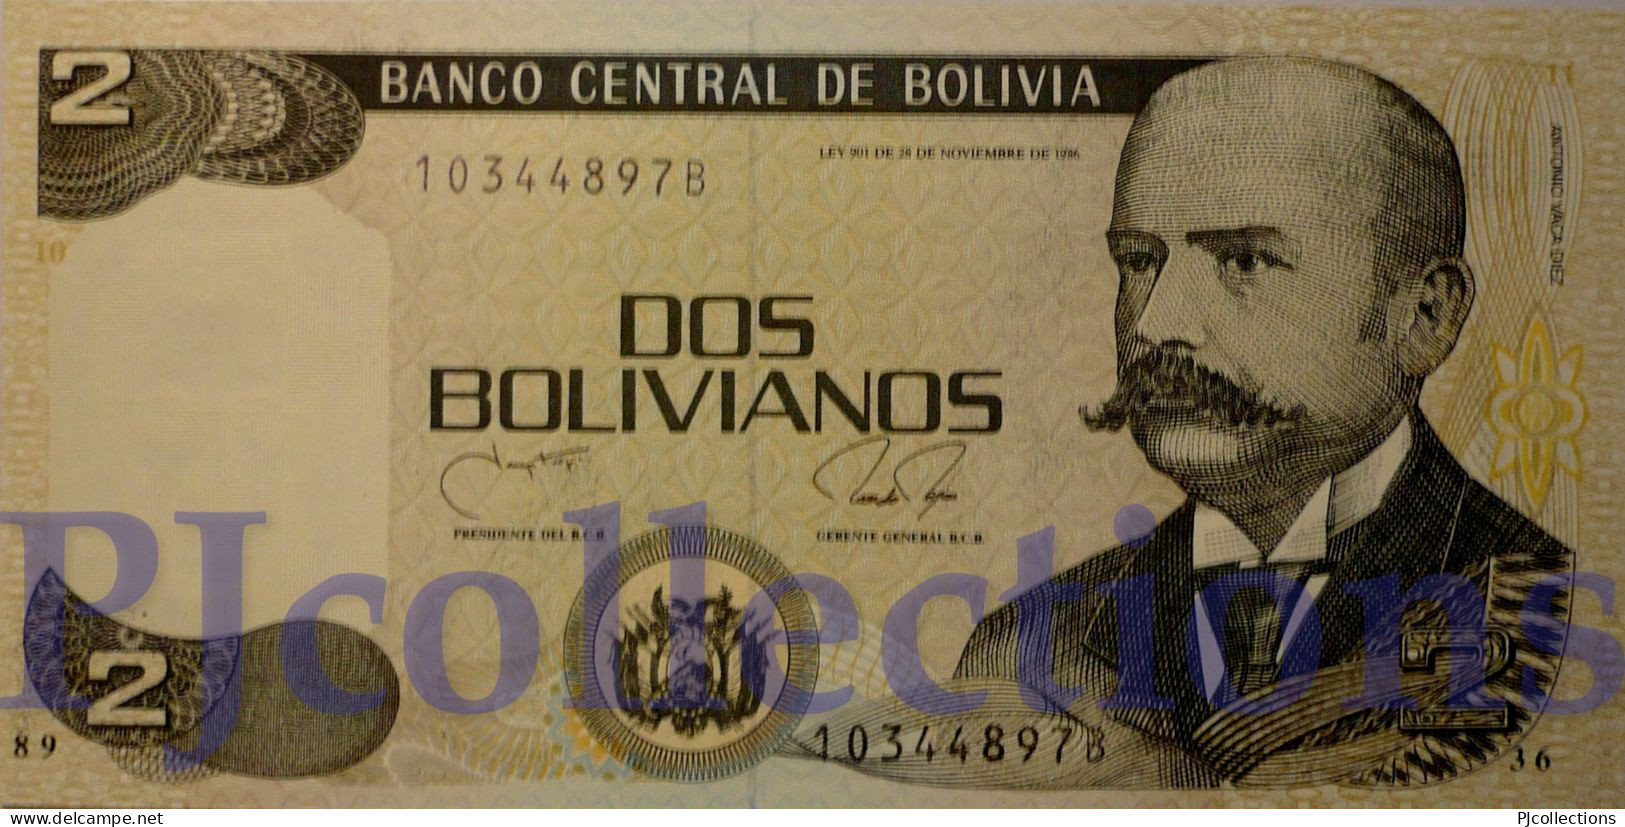 BOLIVIA 2 BOLIVANOS 1990 PICK 202b UNC - Bolivia